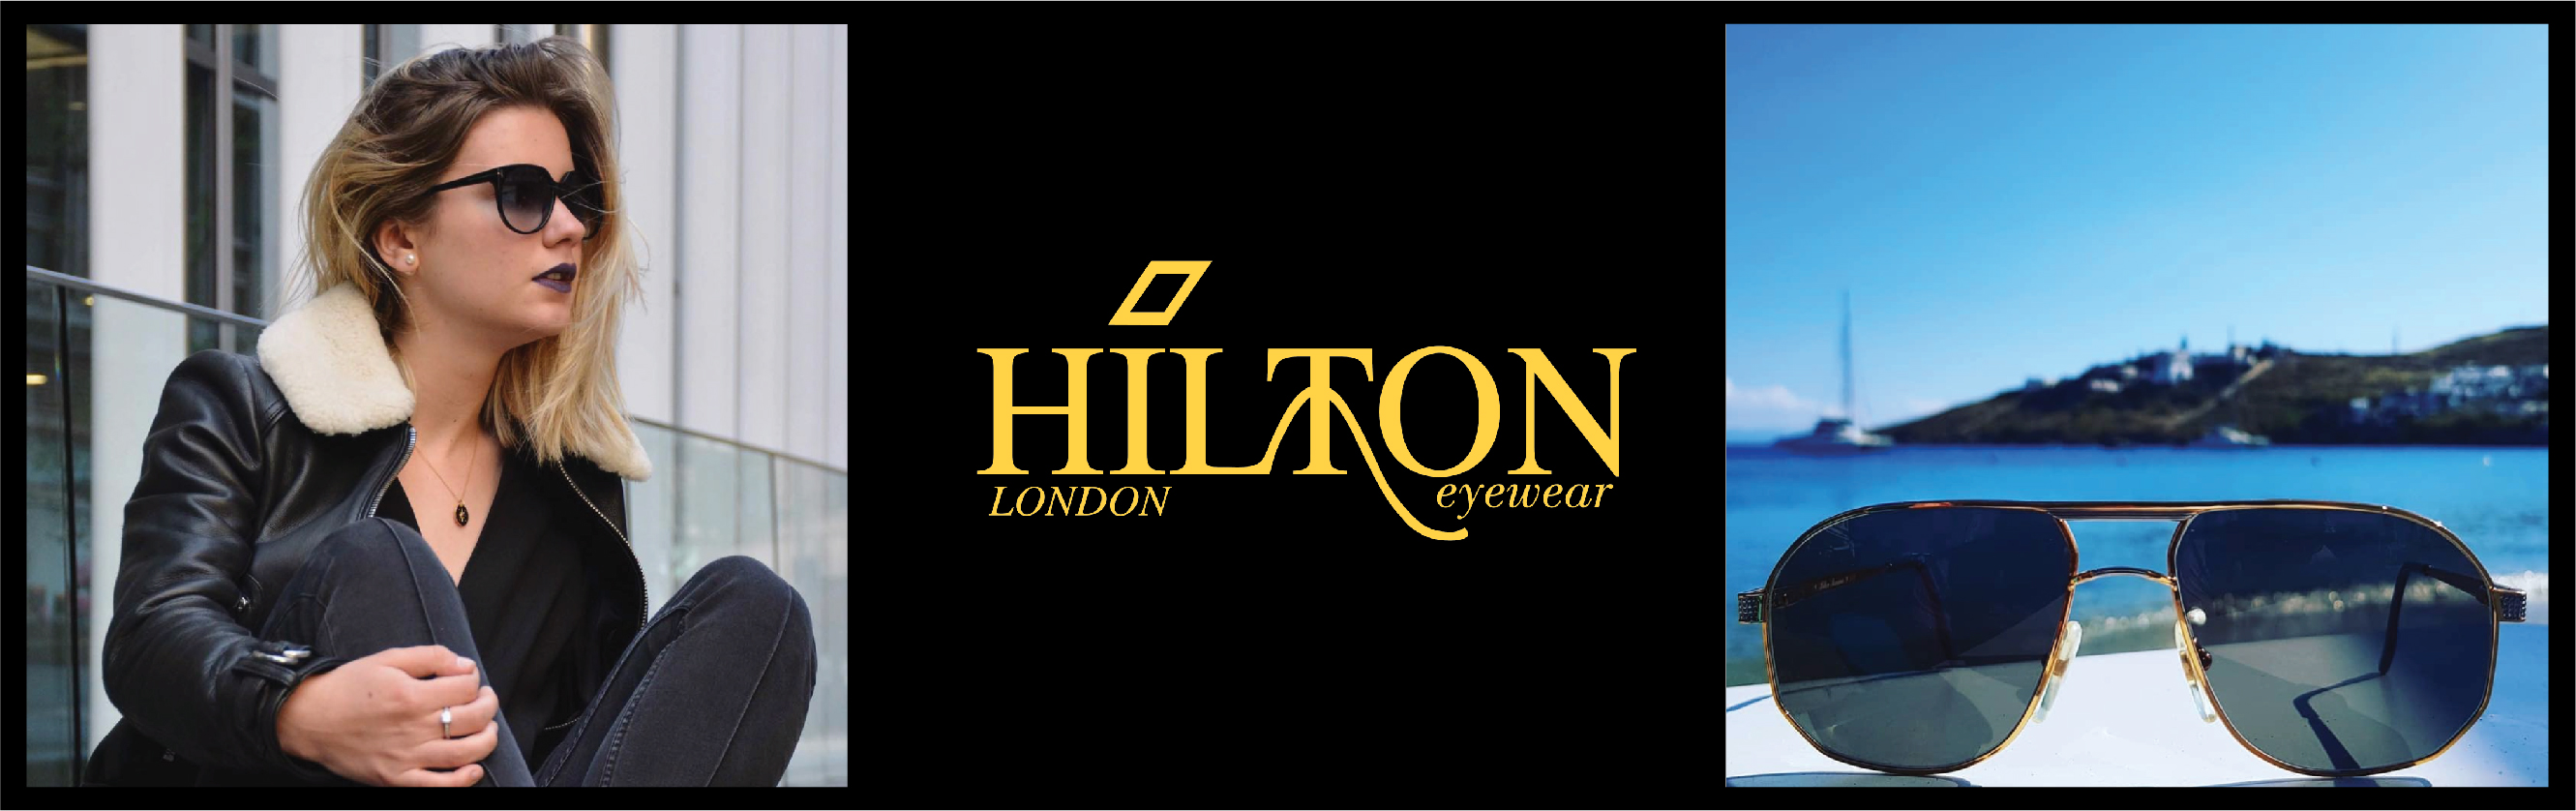 Hilton-Eyewear Banner.jpg